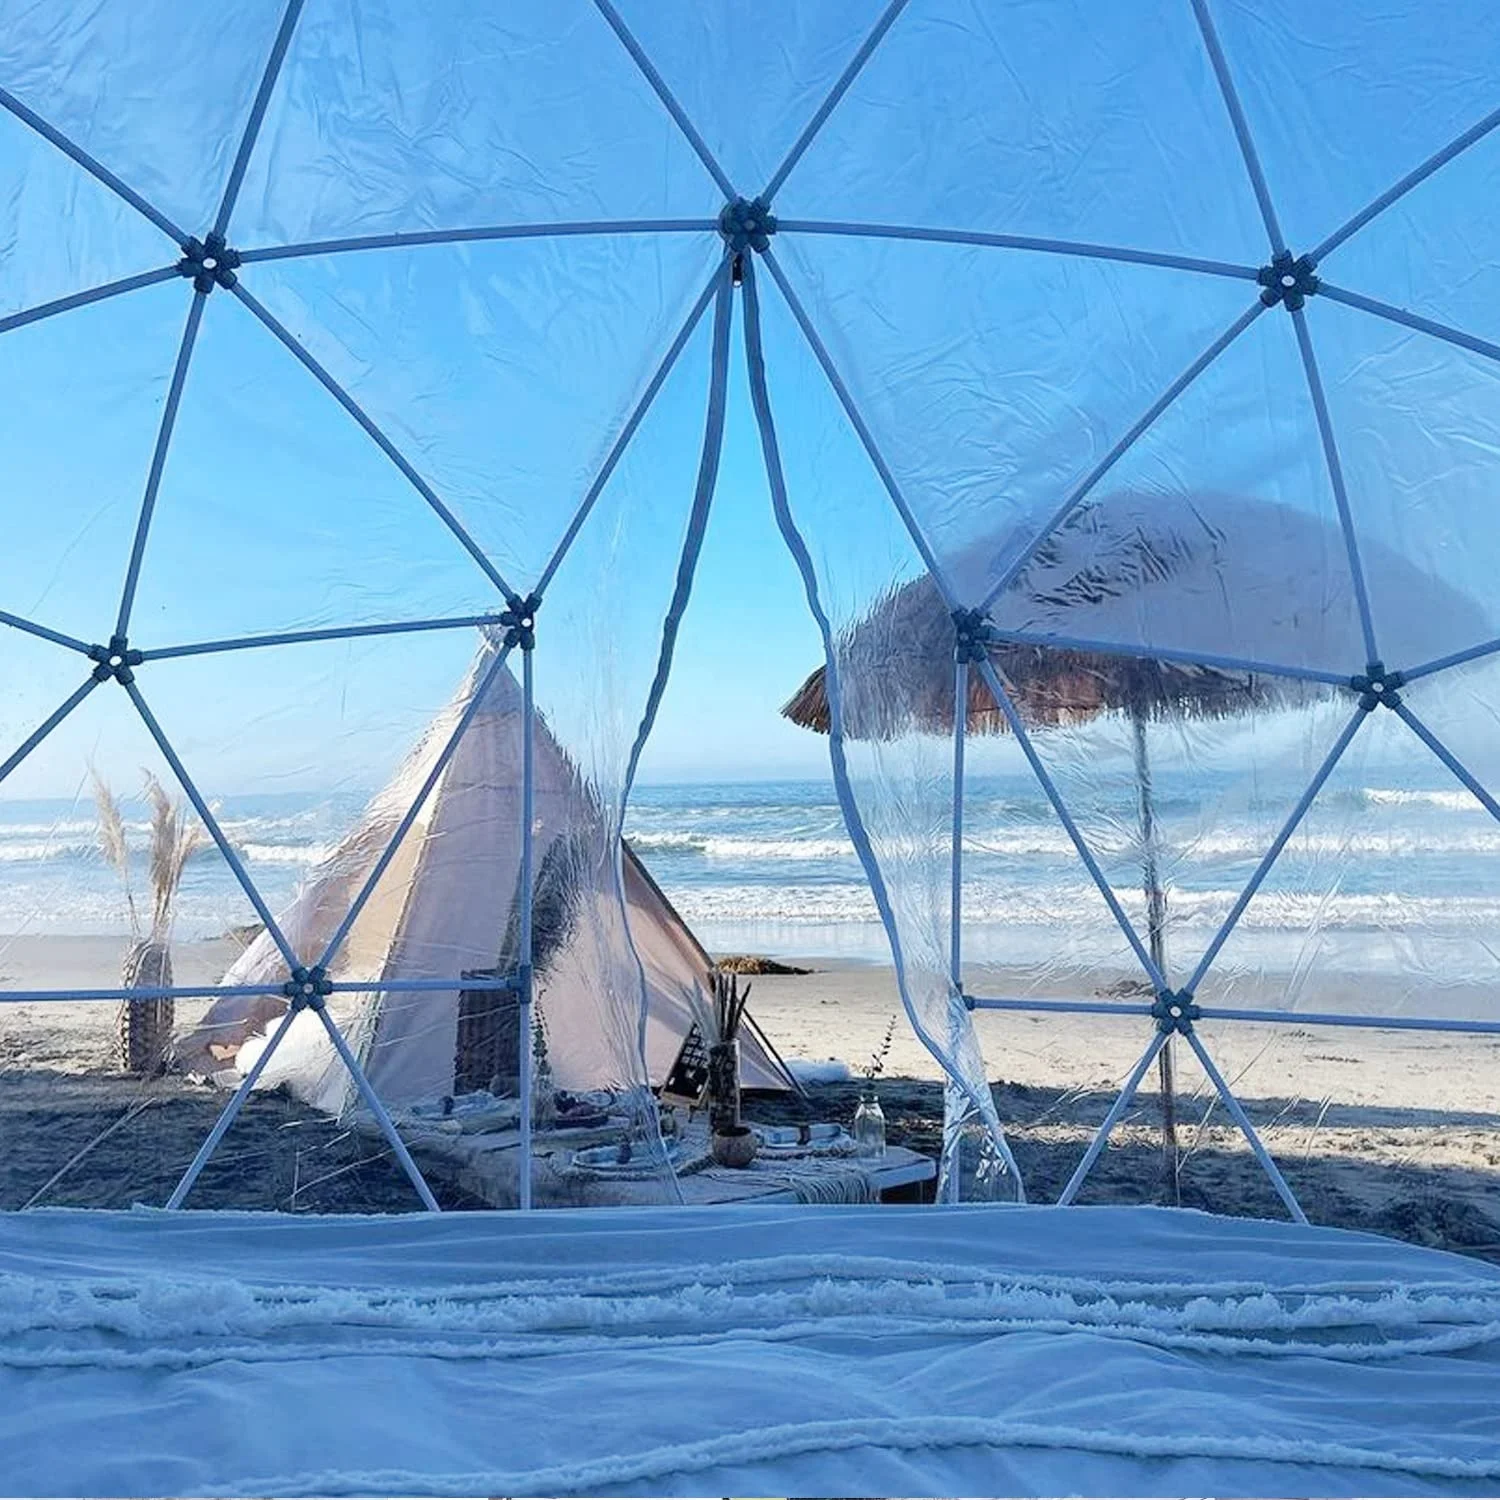 安い Pvcカバー付き12ftバブルテントガーデンドームテント Buy Outdoor Dome Tent,Bubble Tent,Garden  Dome Glamping Tent Product